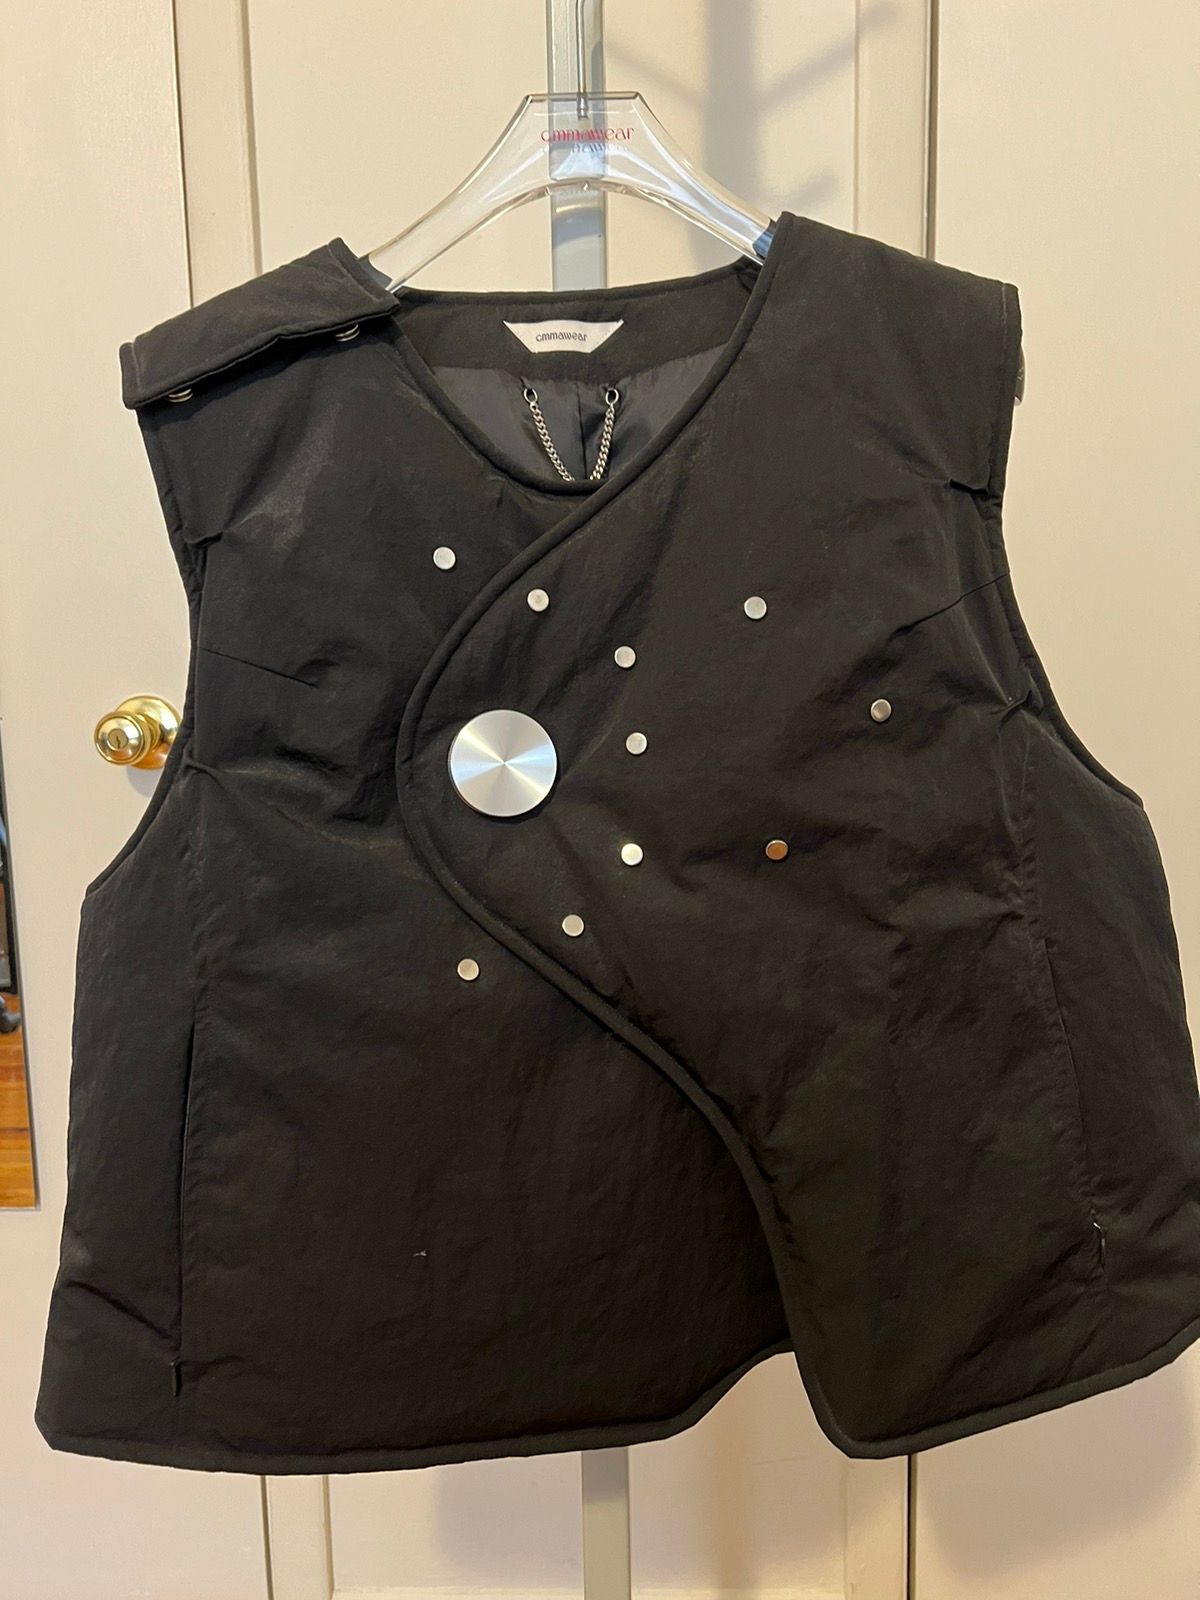 Pre-owned Cmmawear Polaris Vest Black